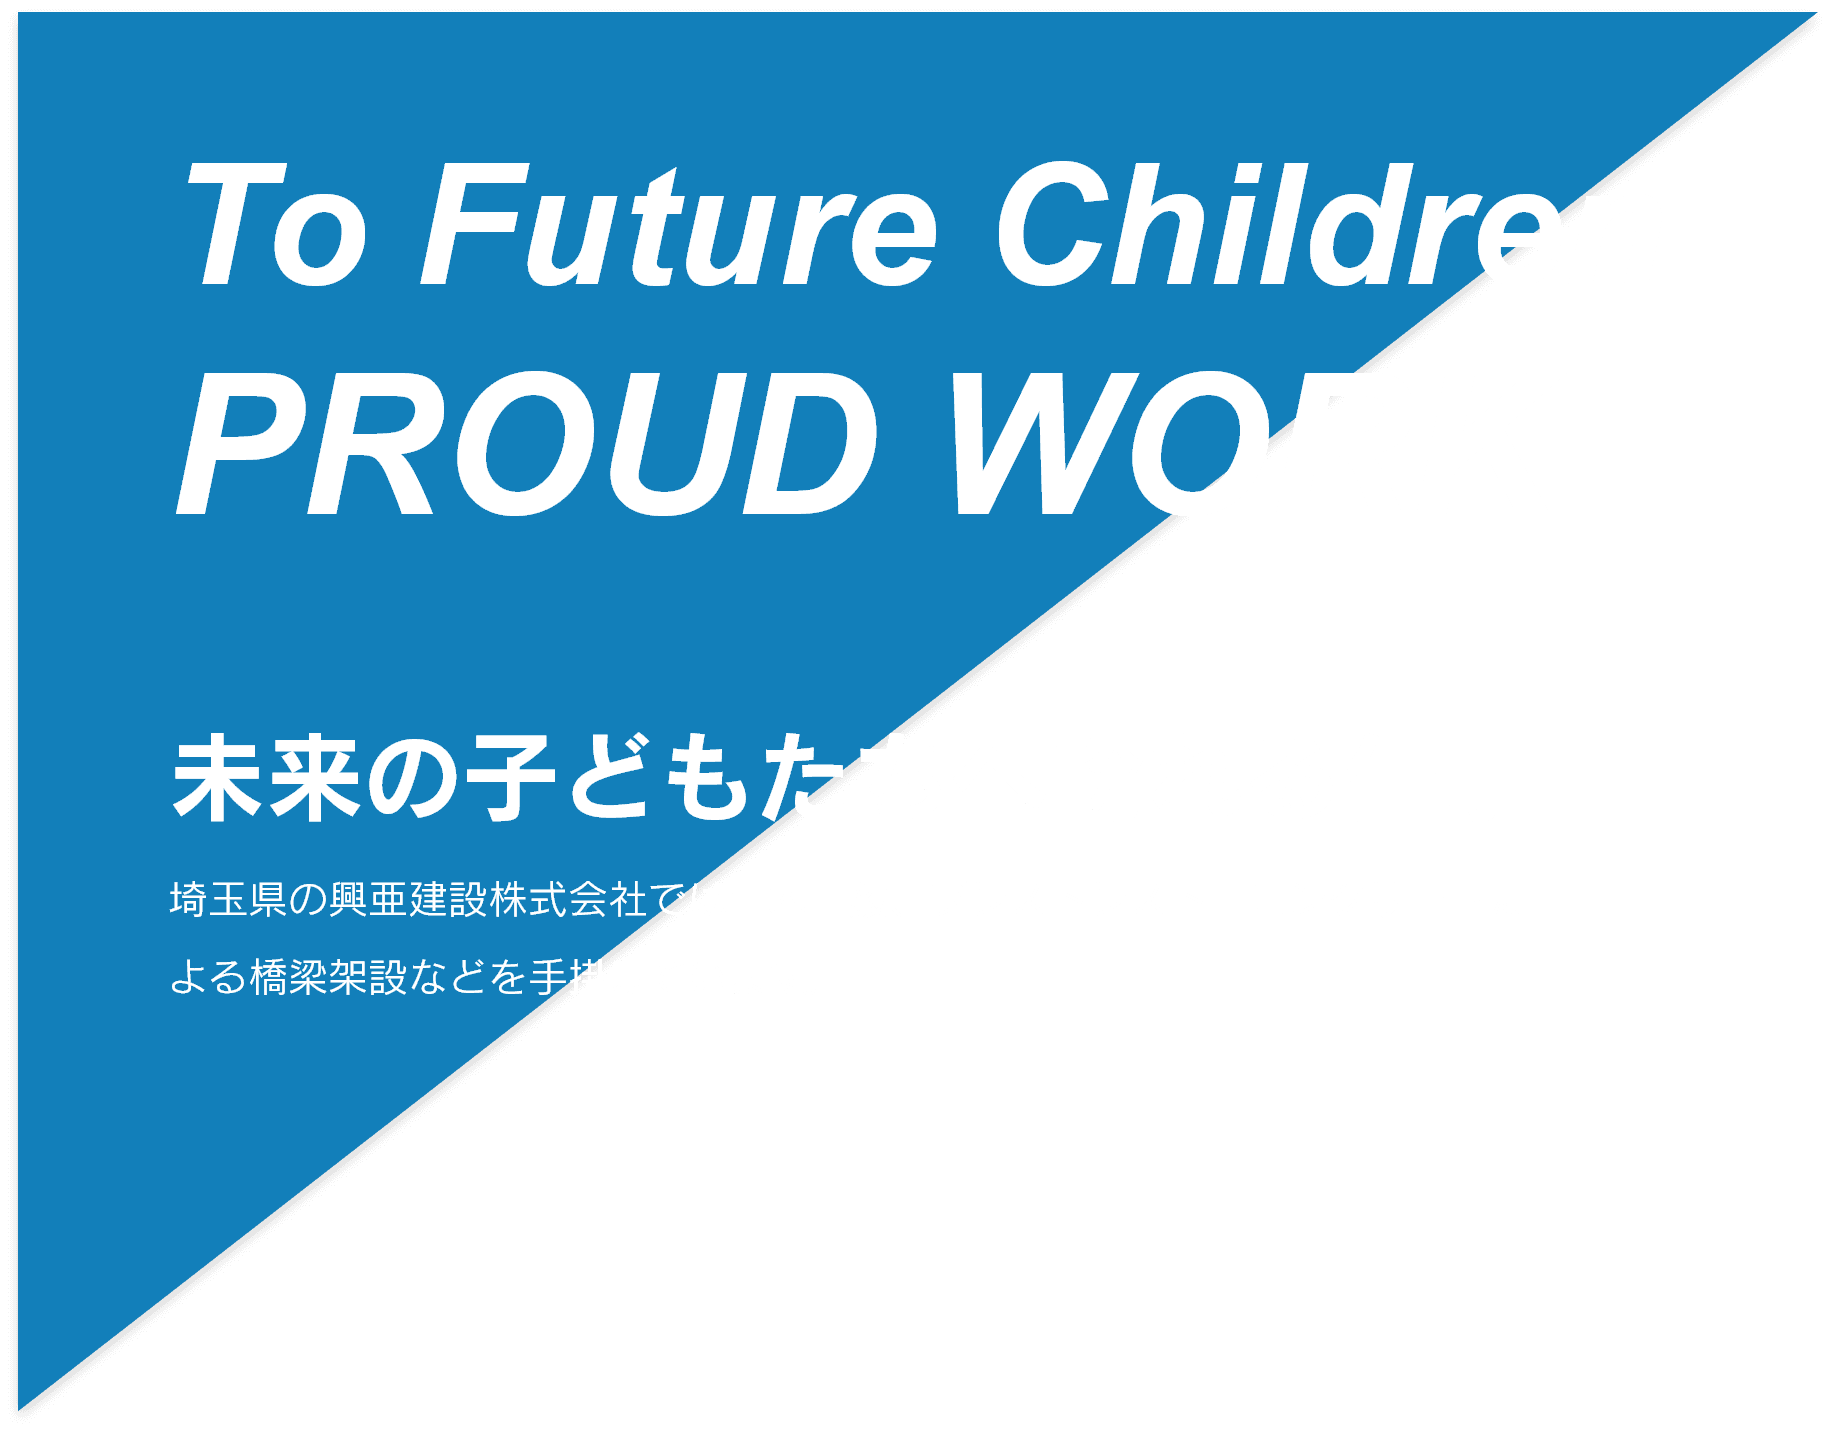 To Future Children PROUD WORK 未来の子どもたちへ誇れる仕事　埼玉県の興亜建設株式会社では土木一般、プレストレスト・コンクリートによる橋梁架設などを手掛けています。